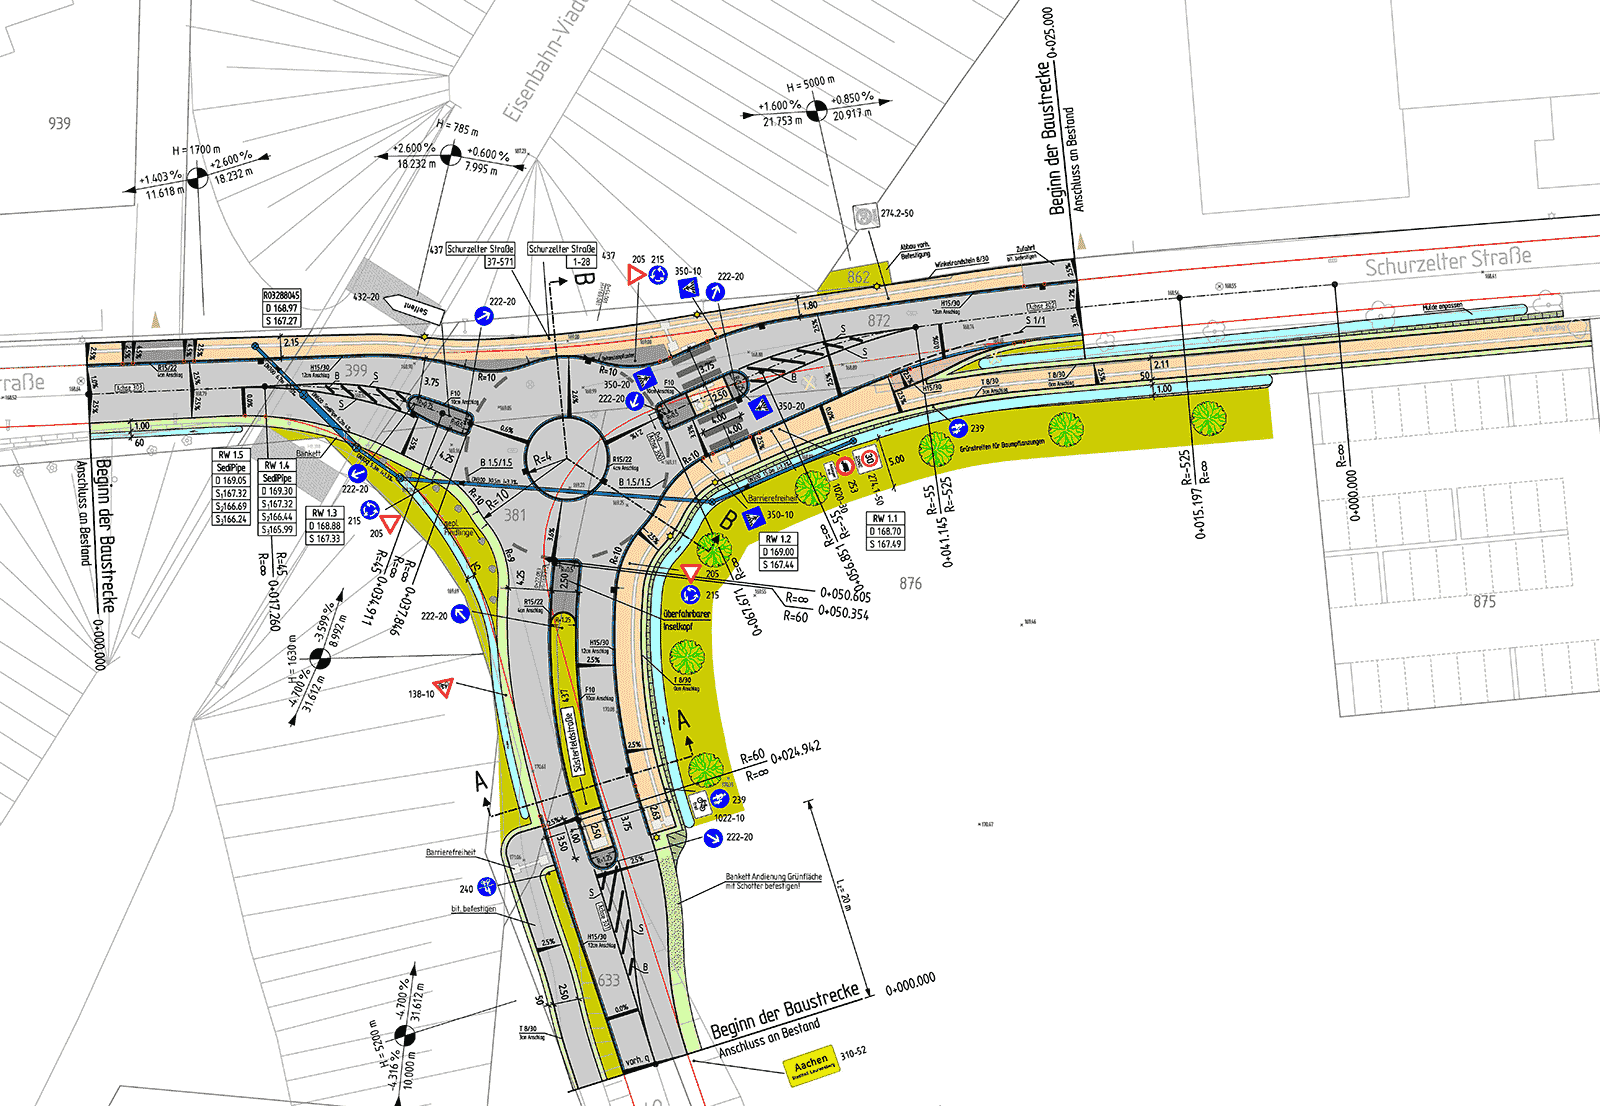  Kreisverkehrsplatz Aachen - Plan